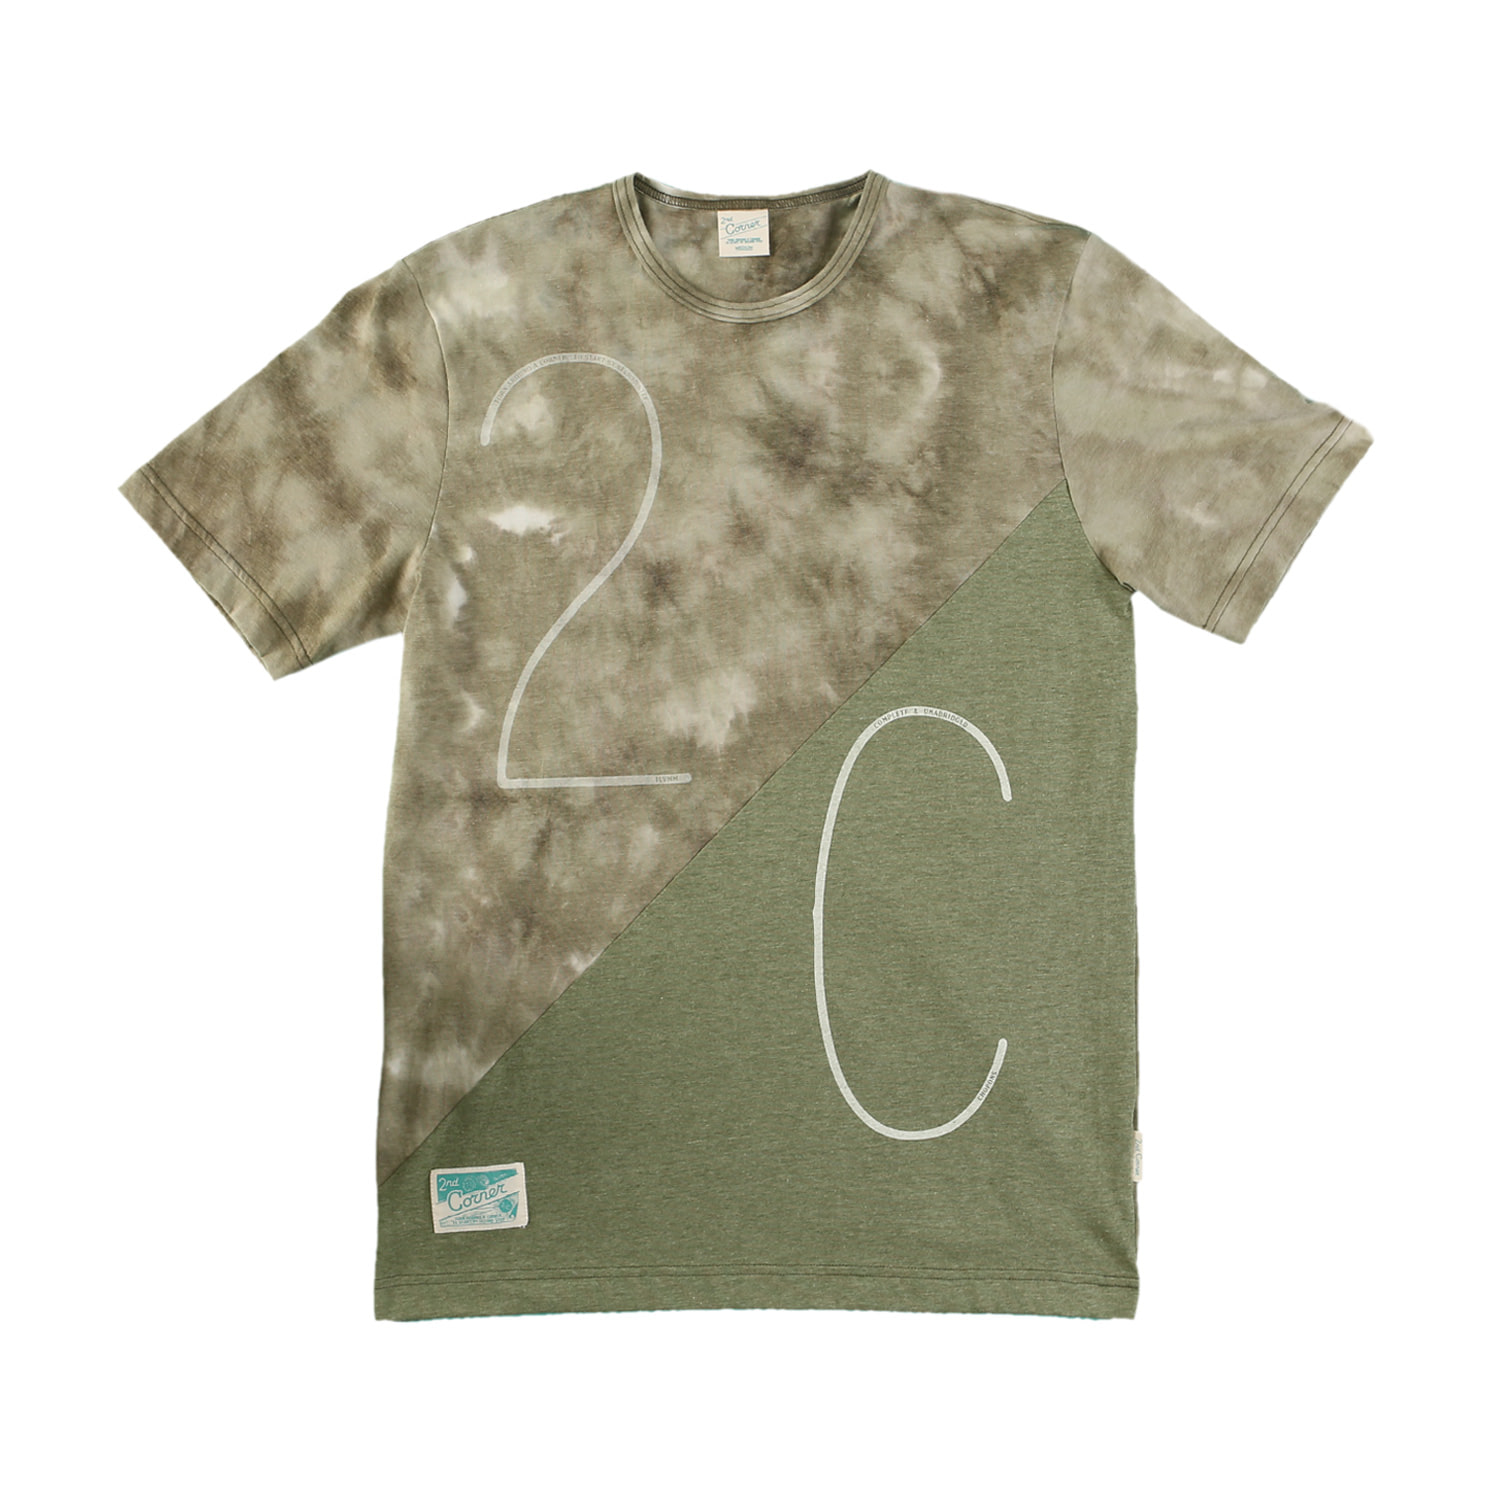 세컨드코너 2C 남성 반팔 티셔츠 / 그래픽 티셔츠 / 라운드넥 반팔티 / 물나염 티셔츠 Stieg - Tye Dye Khaki